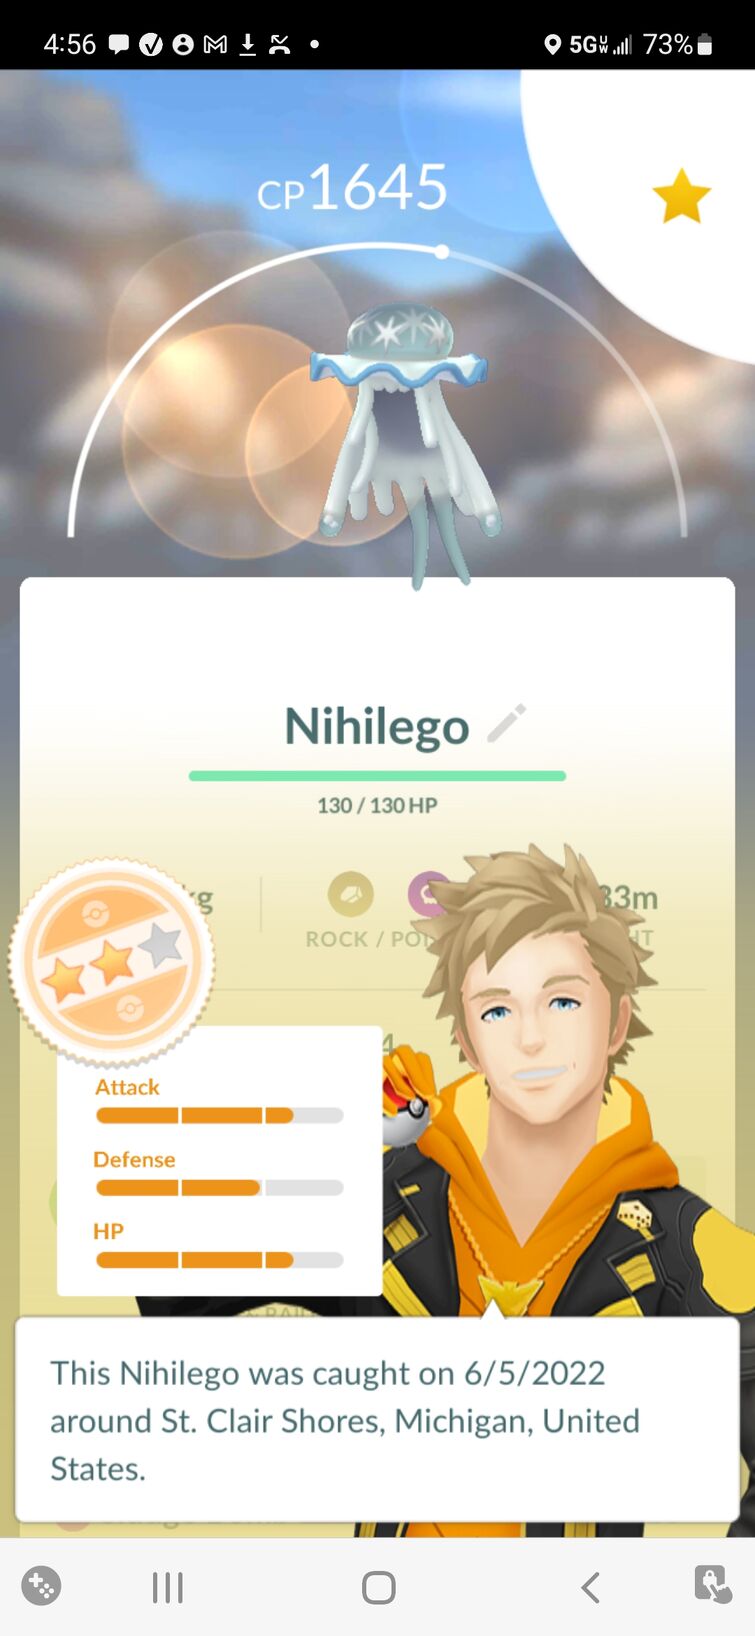 Nihilego Raid Boss Counters Guide - Como vencer Nihilego em Pokémon GO